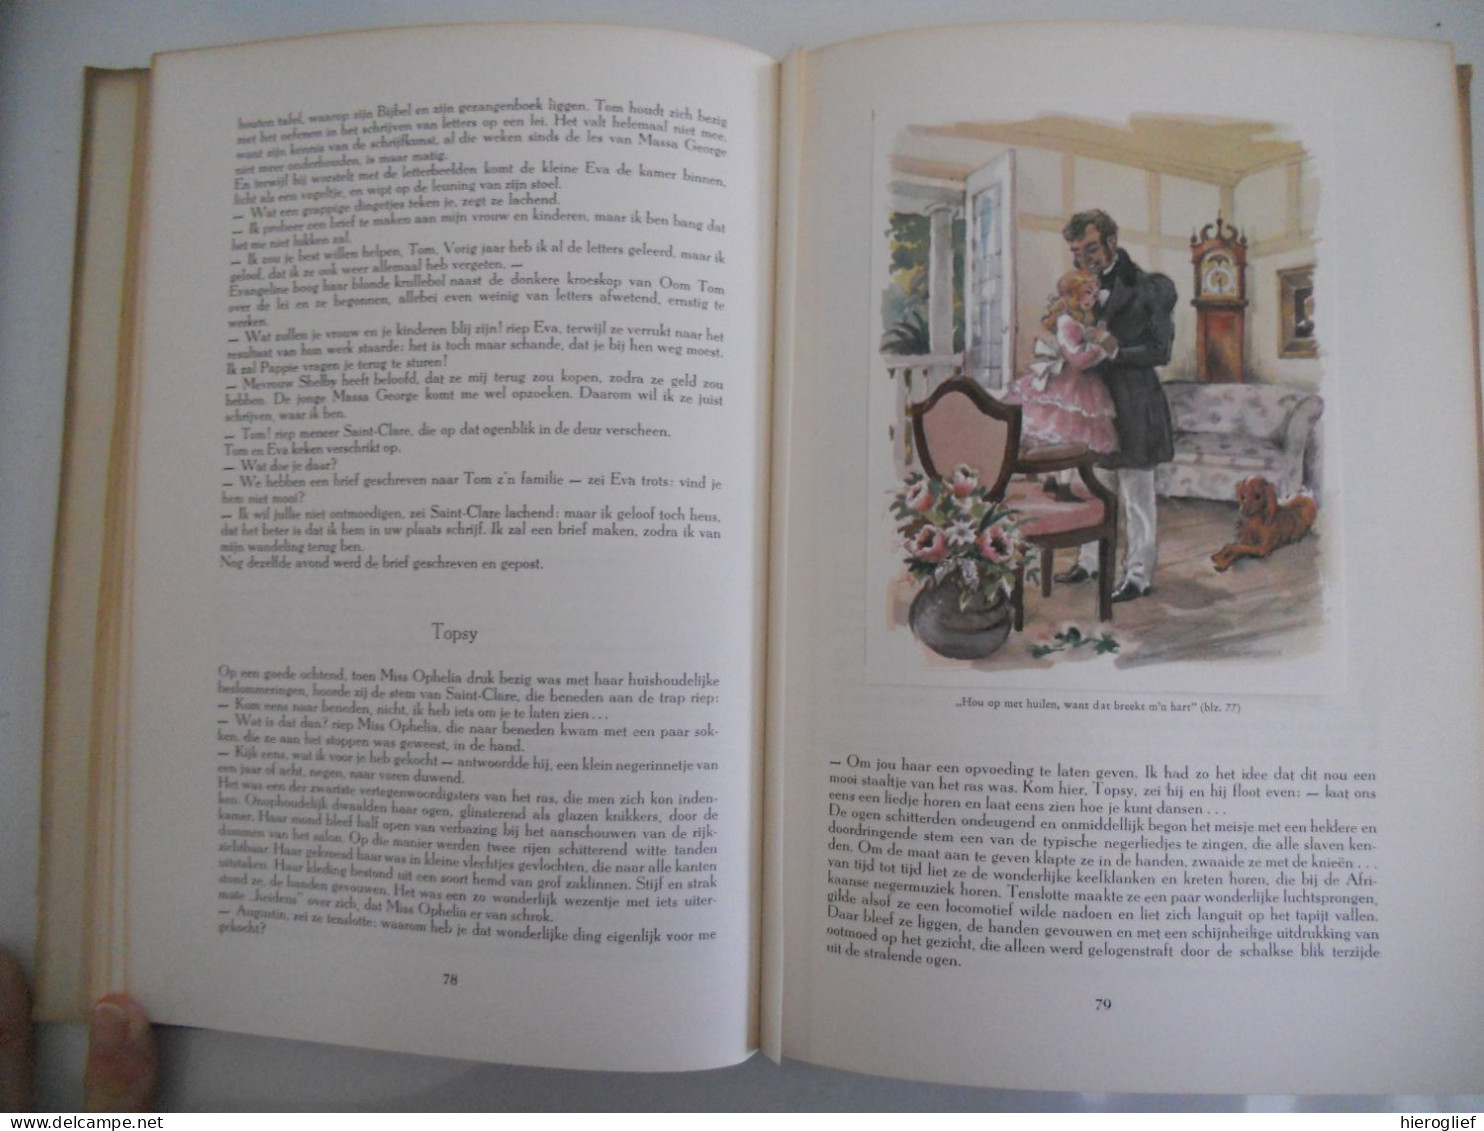 DE HUT VAN OOM TOM Album Artis ALLE CHROMO'S 1958 Harriet Beecher-Stowe bewerking J Voellmy illustraties Hugo Laubi